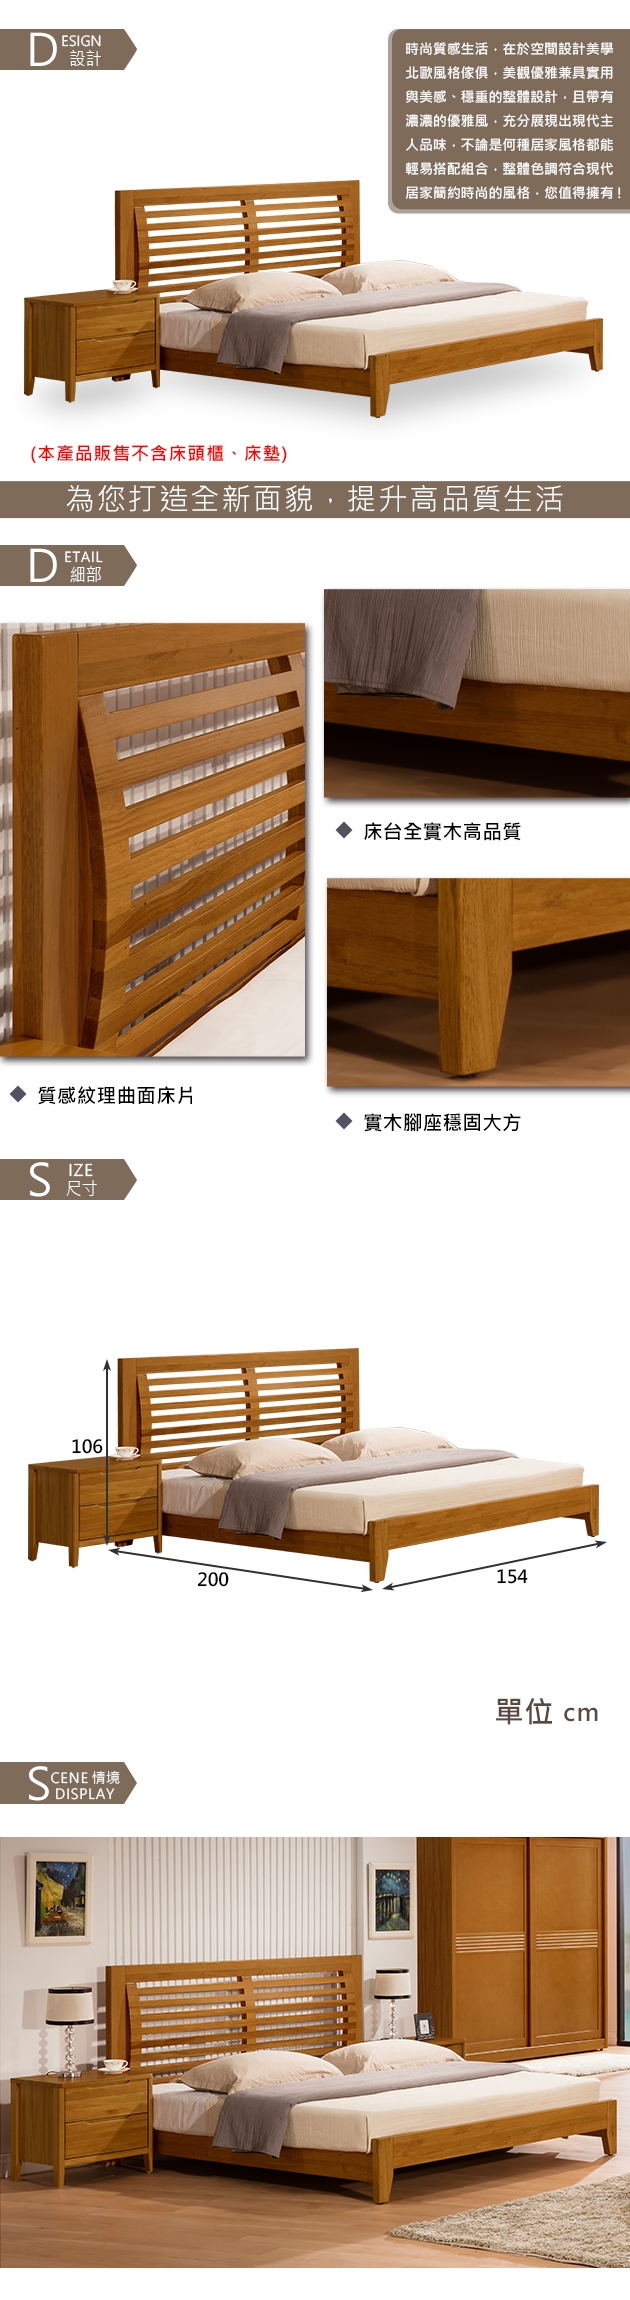 時尚屋米堤柚木色5尺床片型雙人床(不含床頭櫃-床墊)